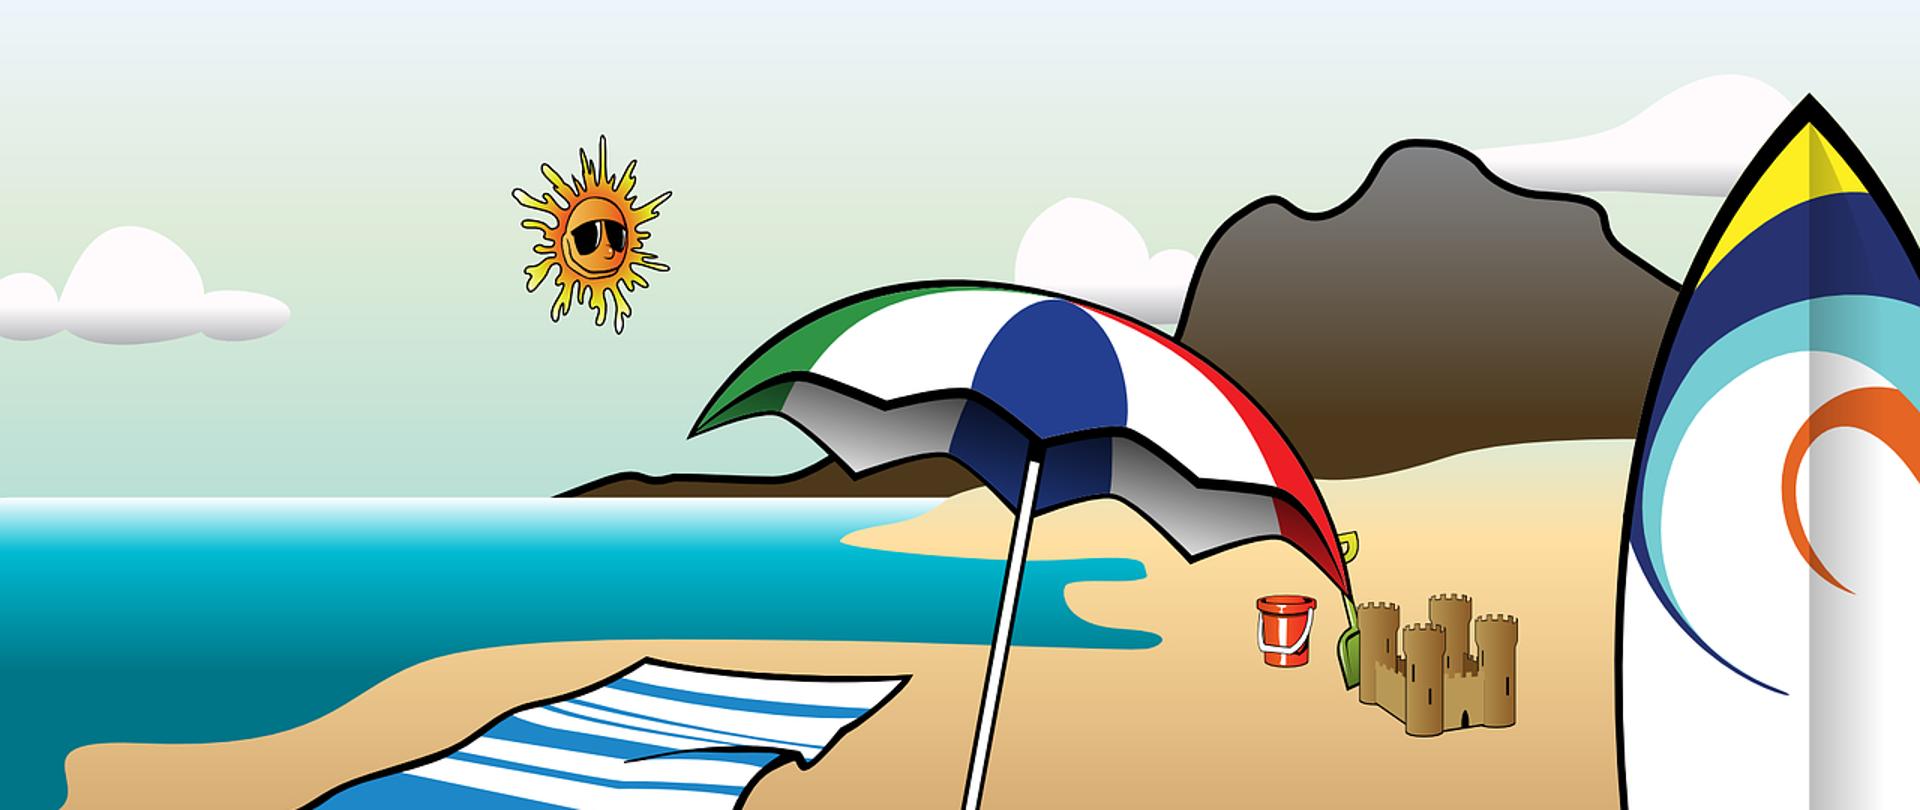 Po lewej stronie zdjęcia widoczne morze, po prawej plaża, na środku kolorowa parasolka, ręcznik, zamek z piasku i foremki. W tle widać też zarys gór. W prawym dolnym rogu deska do serfowania.